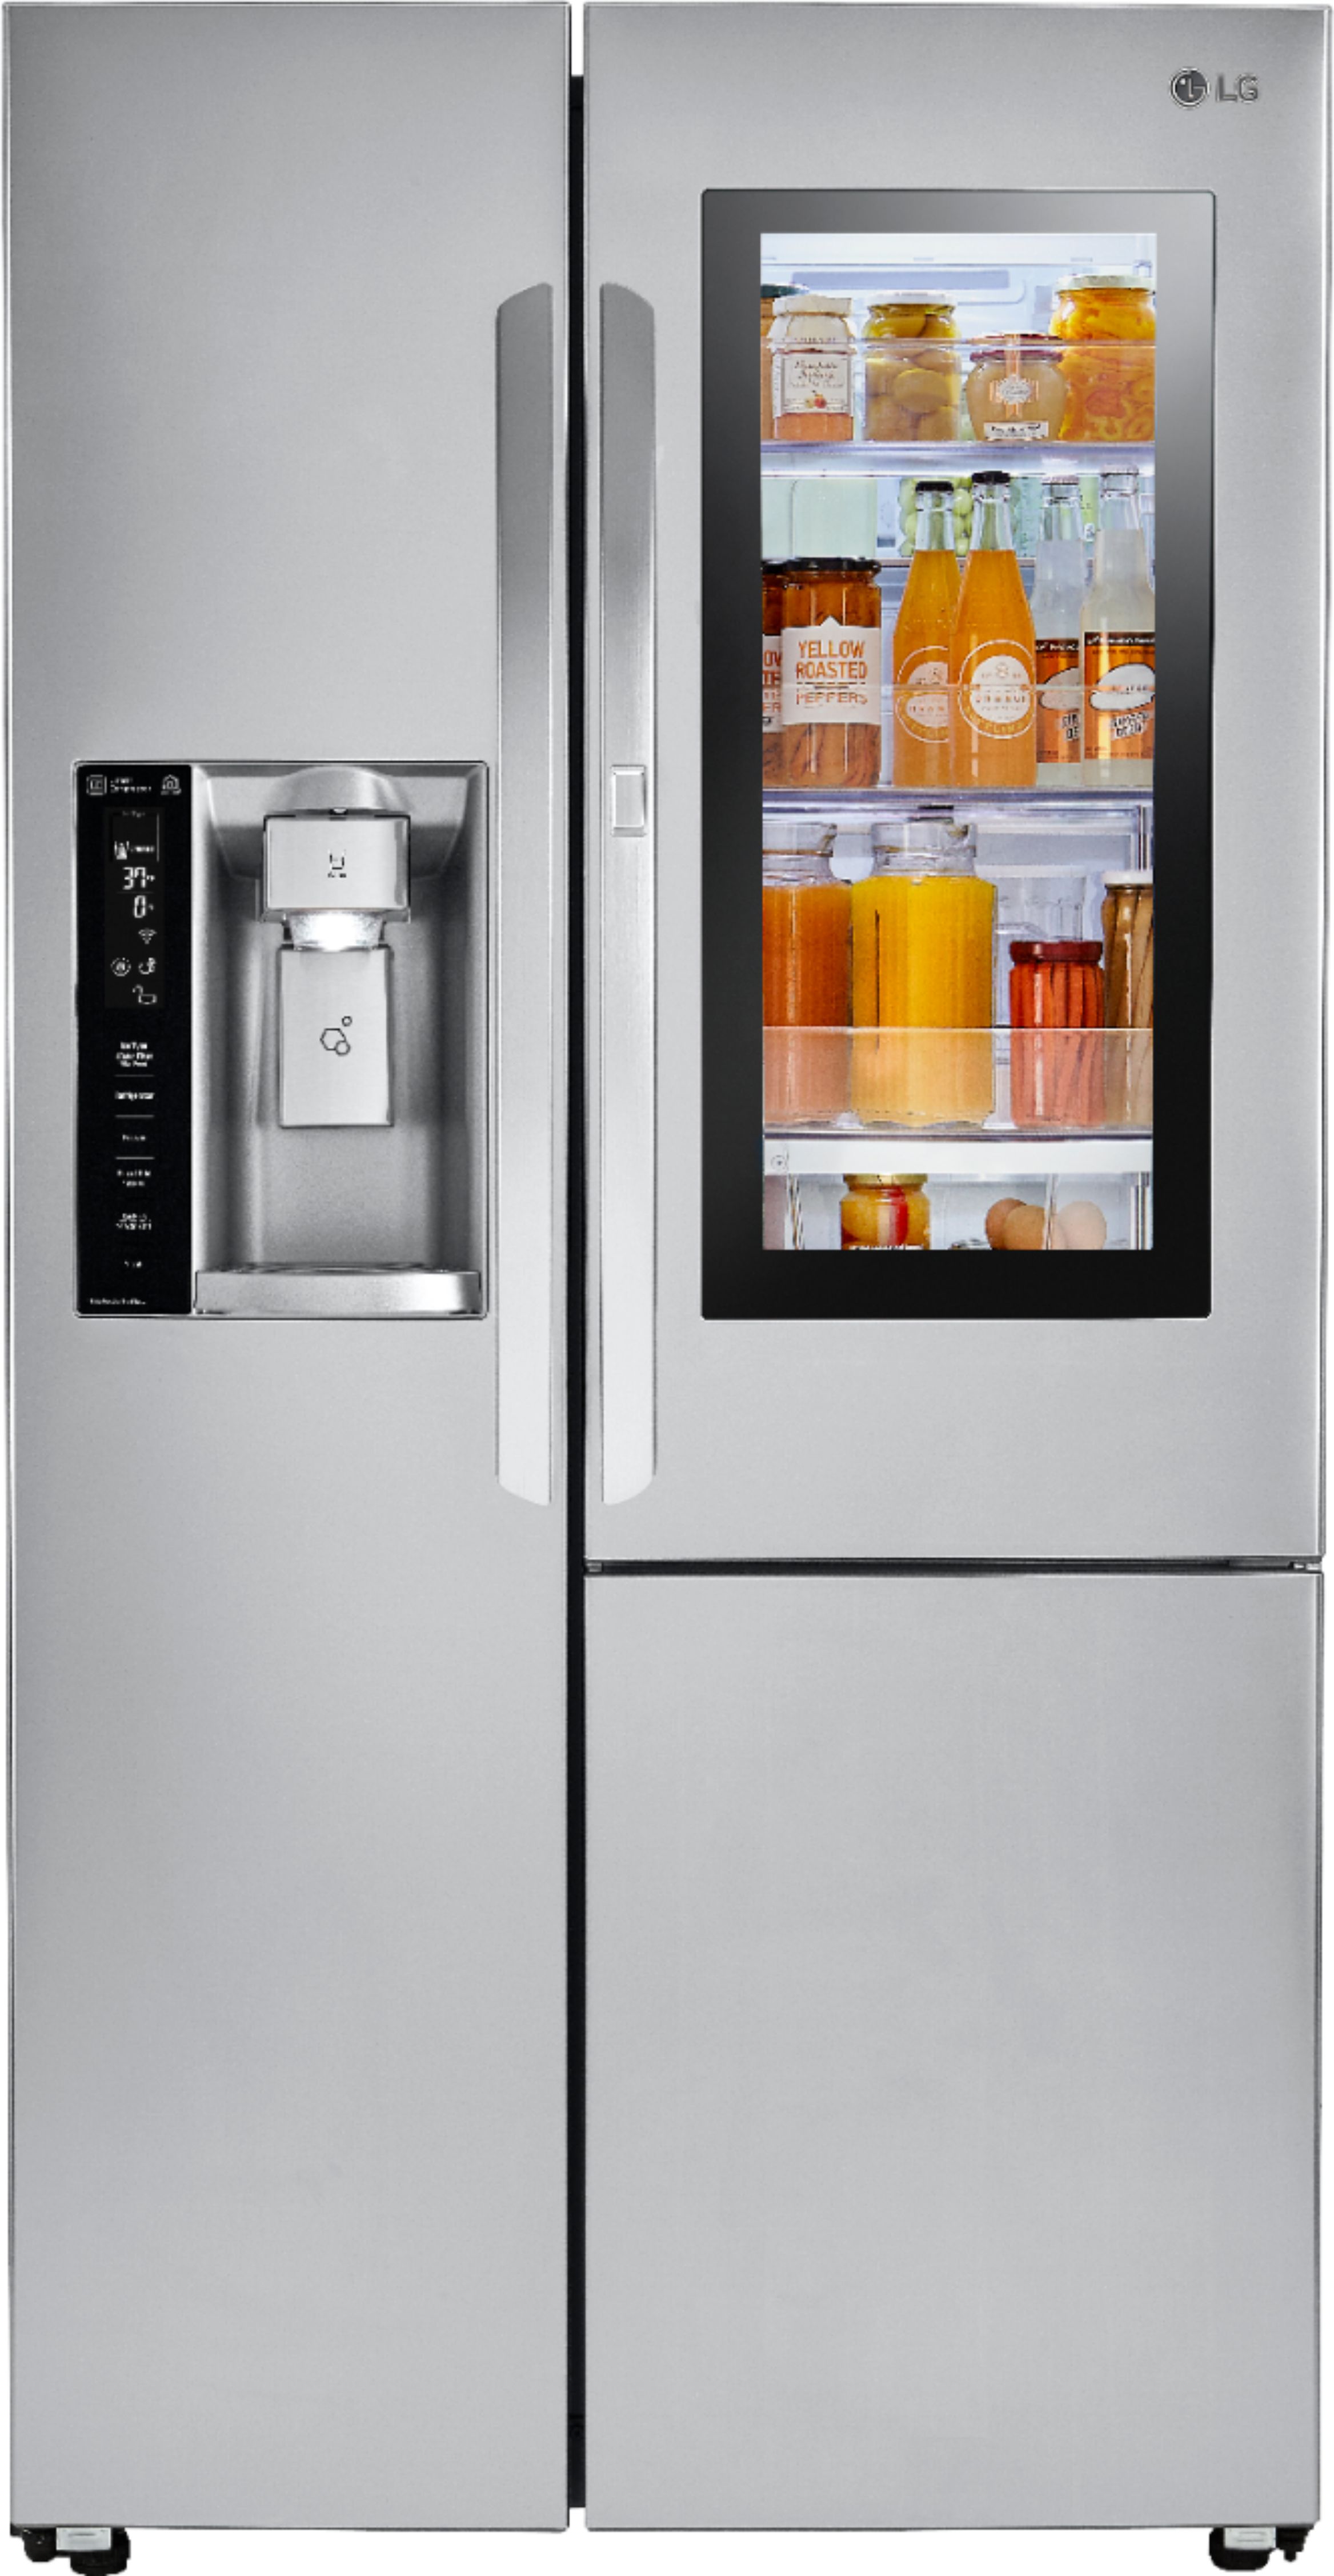 Instaview door-in-door refrigerator lg LG InstaView